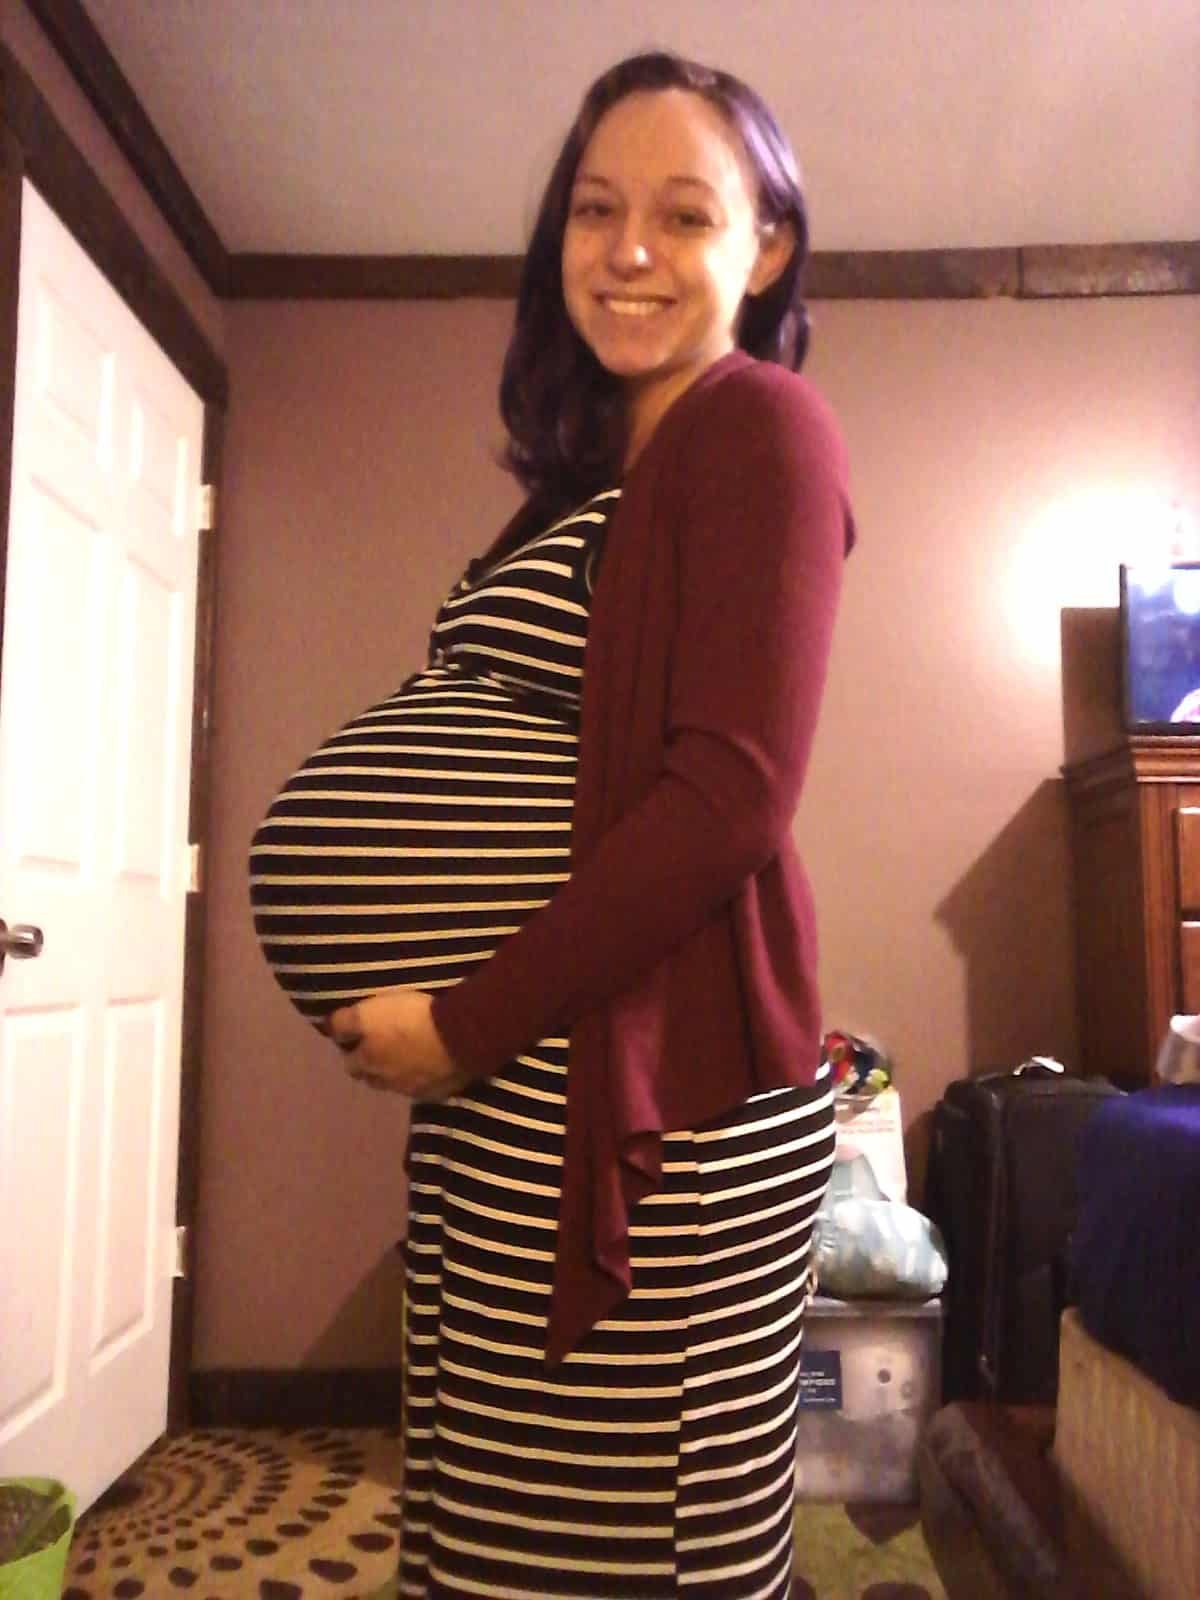 35 semanas de embarazo de gemelos